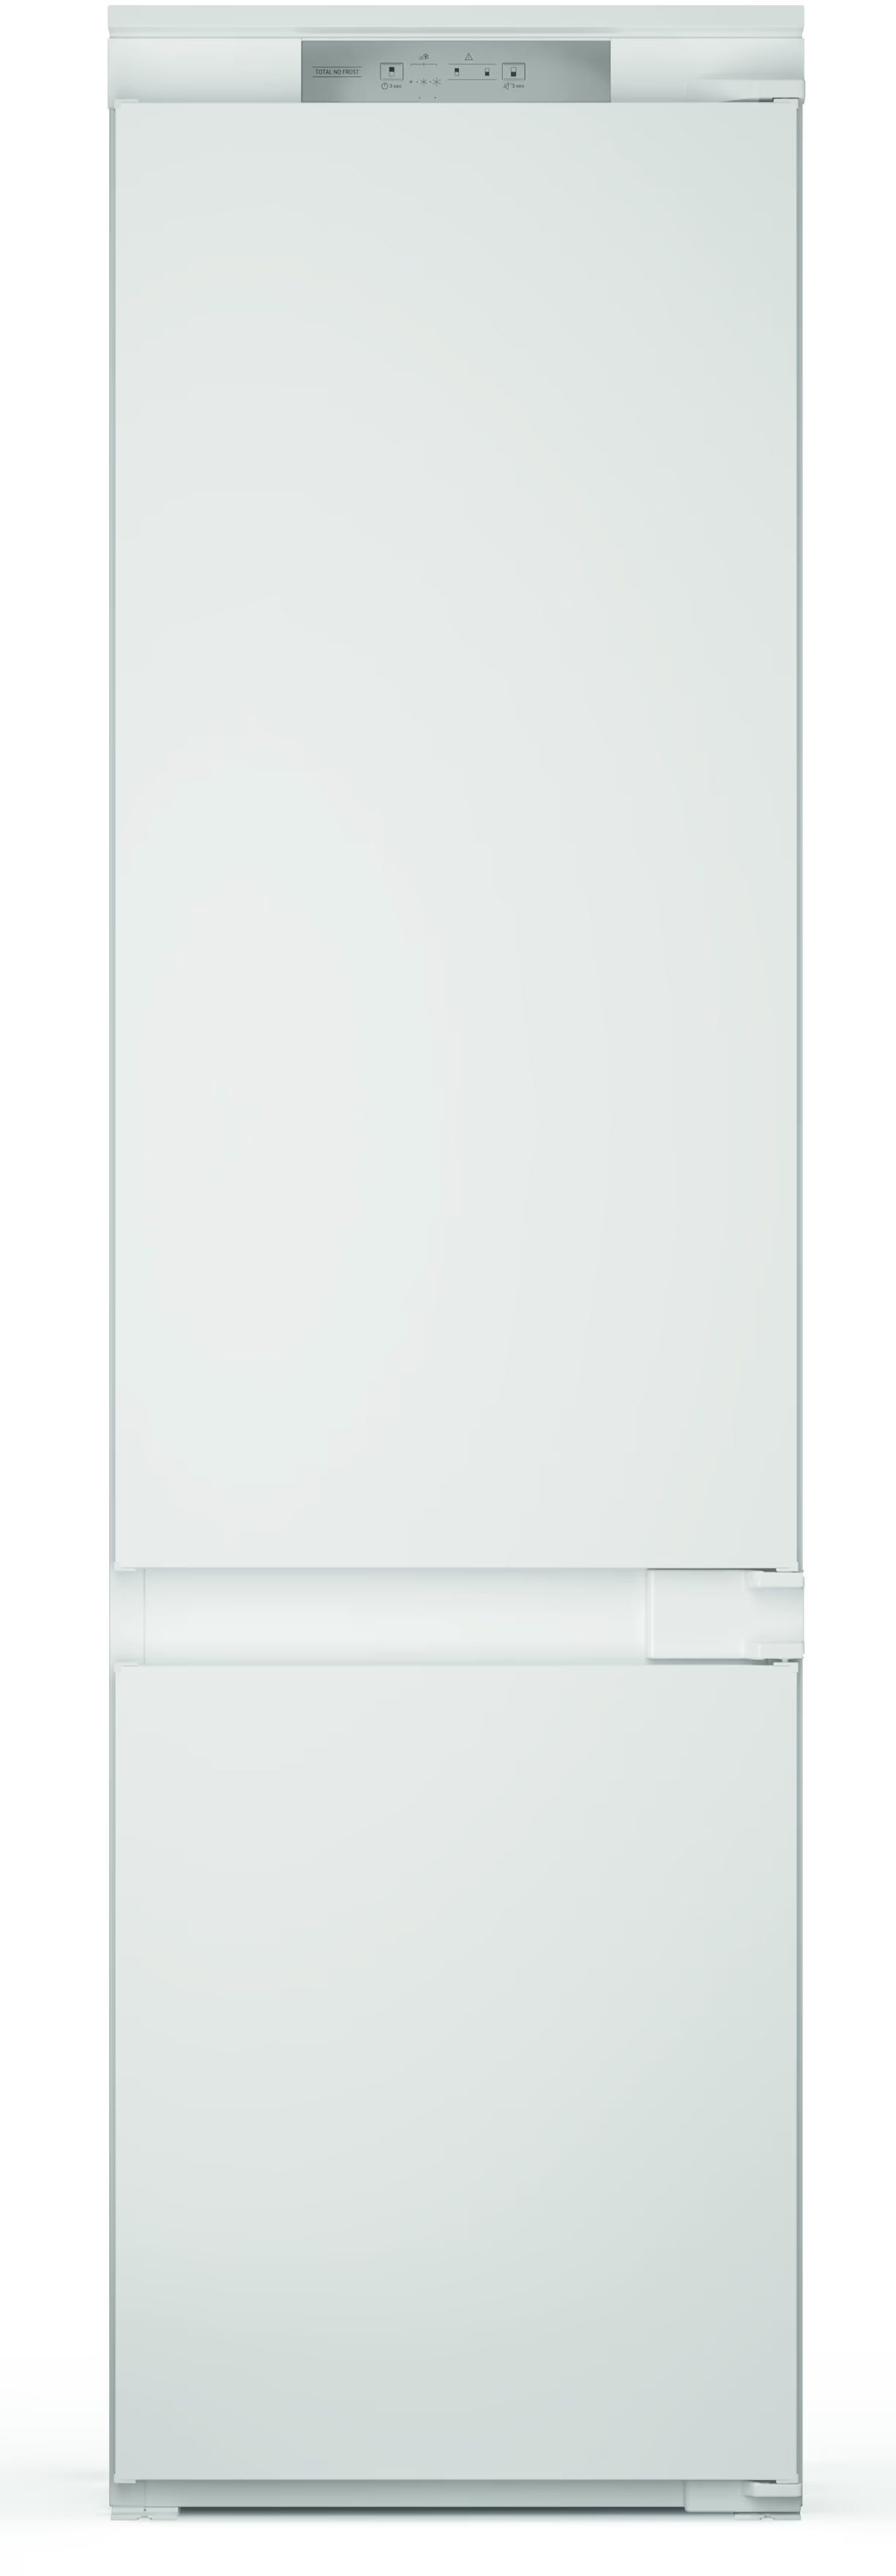 Холодильник Hotpoint Ariston HAC20T321 в интернет-магазине, главное фото